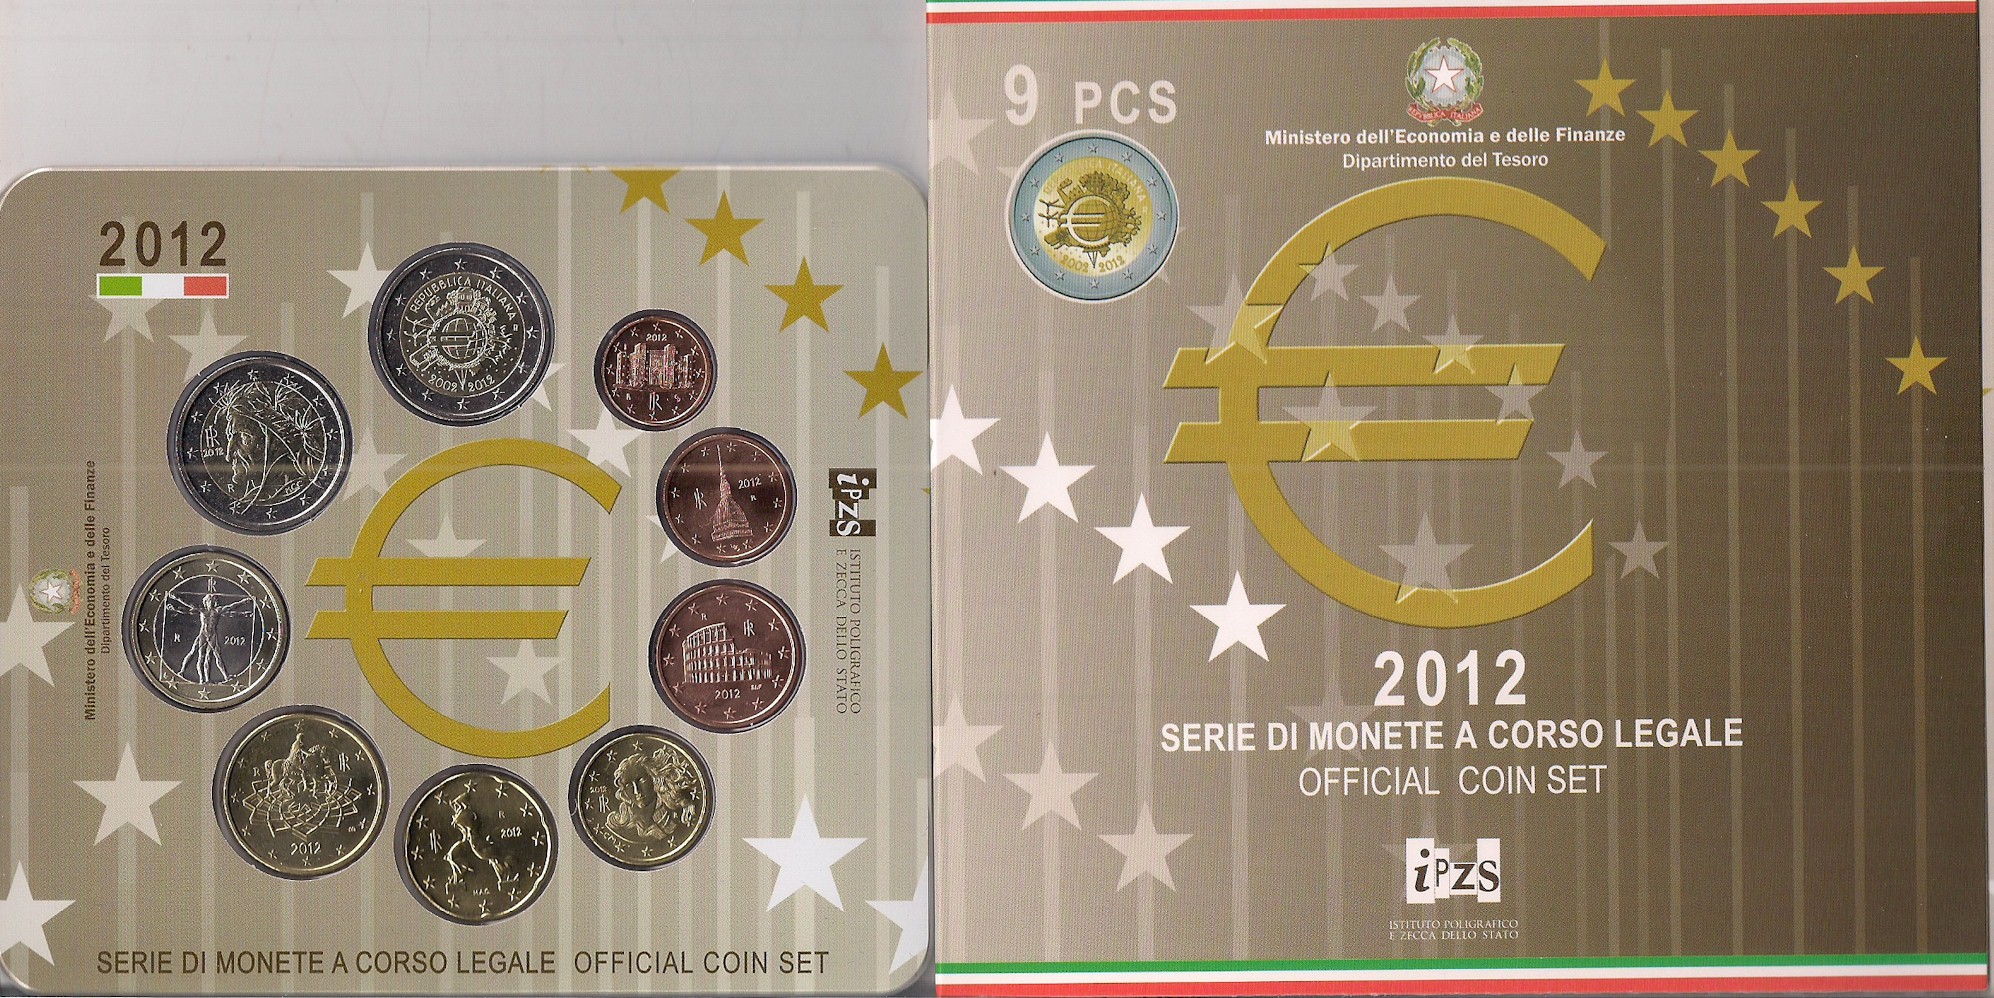 Serie completa di 9 monete in confezione ufficiale con moneta da 2 euro "10 Anniv. Moneta Unica Europea"